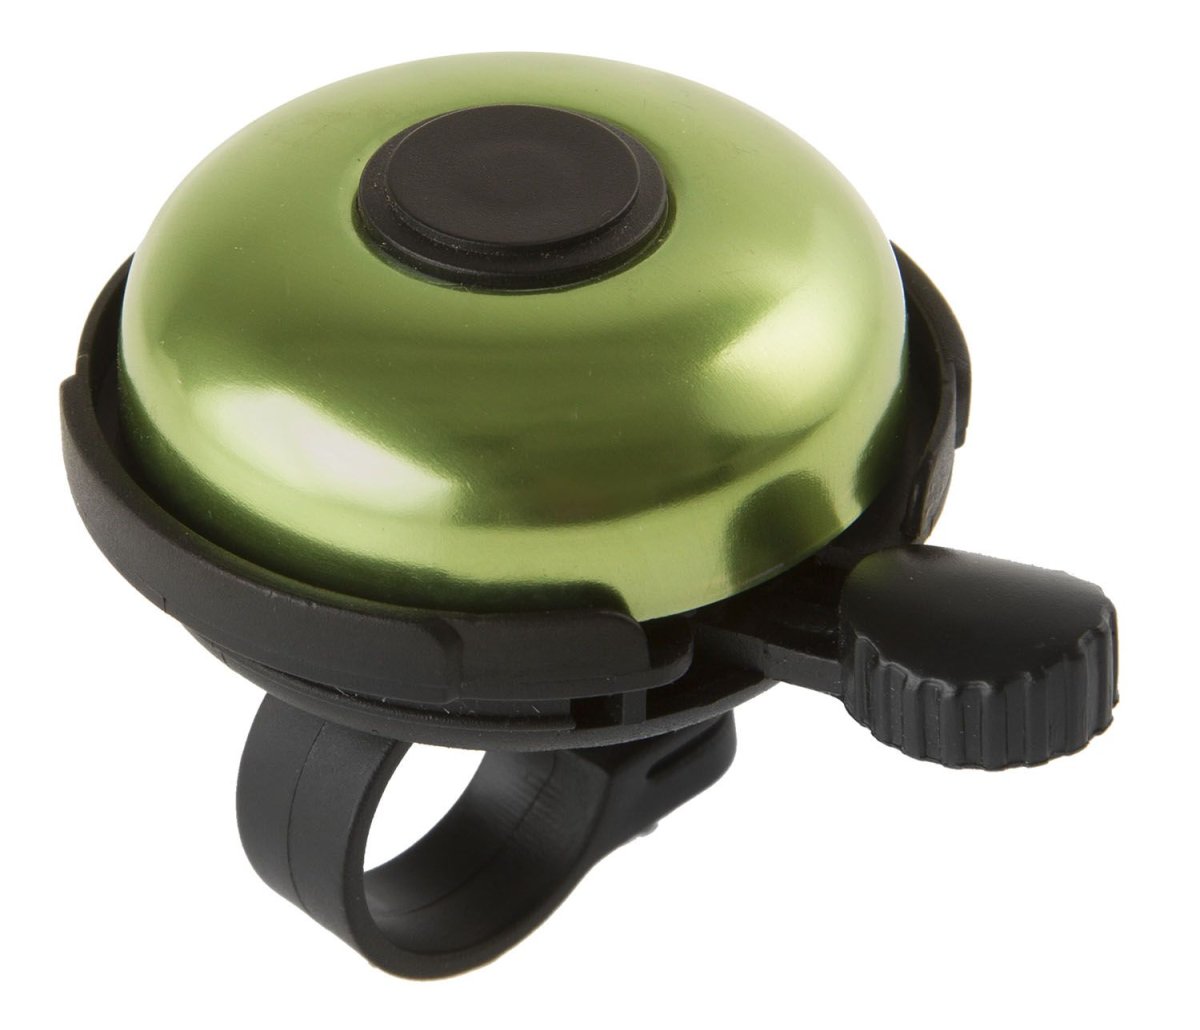 Звонок велосипедный M-Wave, алюминий/пластик, D=53 мм, черно-зеленый, 5-420155 звонок велосипедный bbb bike bell easyfit deluxe displaybox 20pcs черно серый bbb 14d